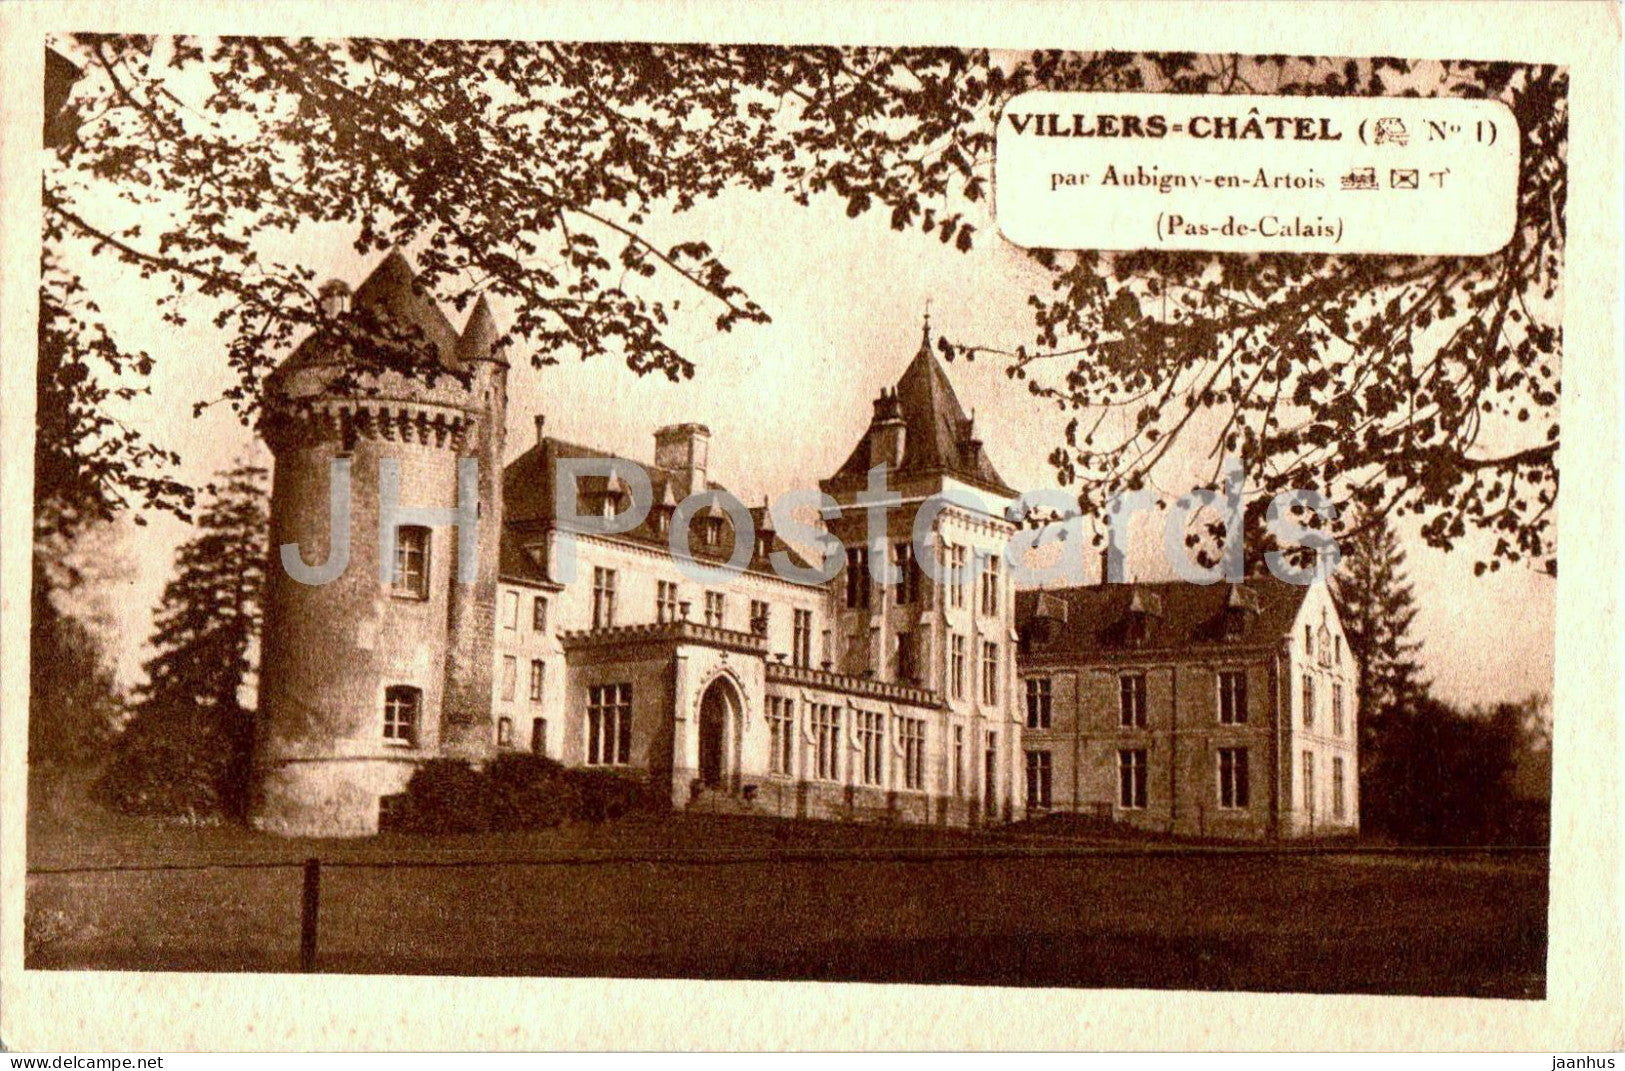 Villers Chatel - par Aubigny en Artois - Pas de Calais - castle - old postcard - France - used - JH Postcards